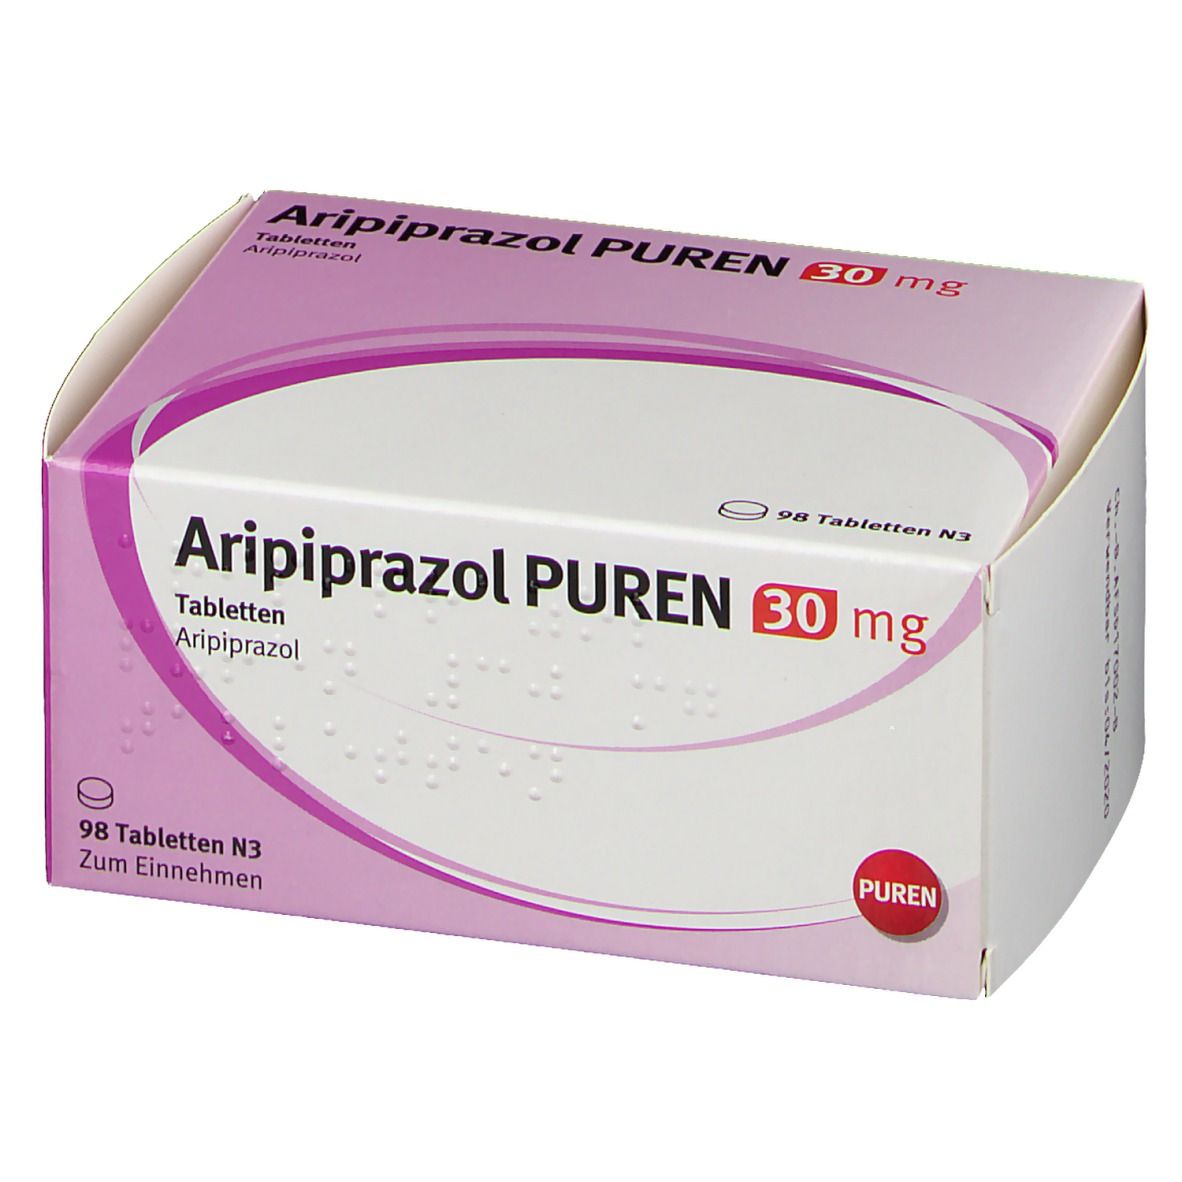 Aripiprazol PUREN 30 mg